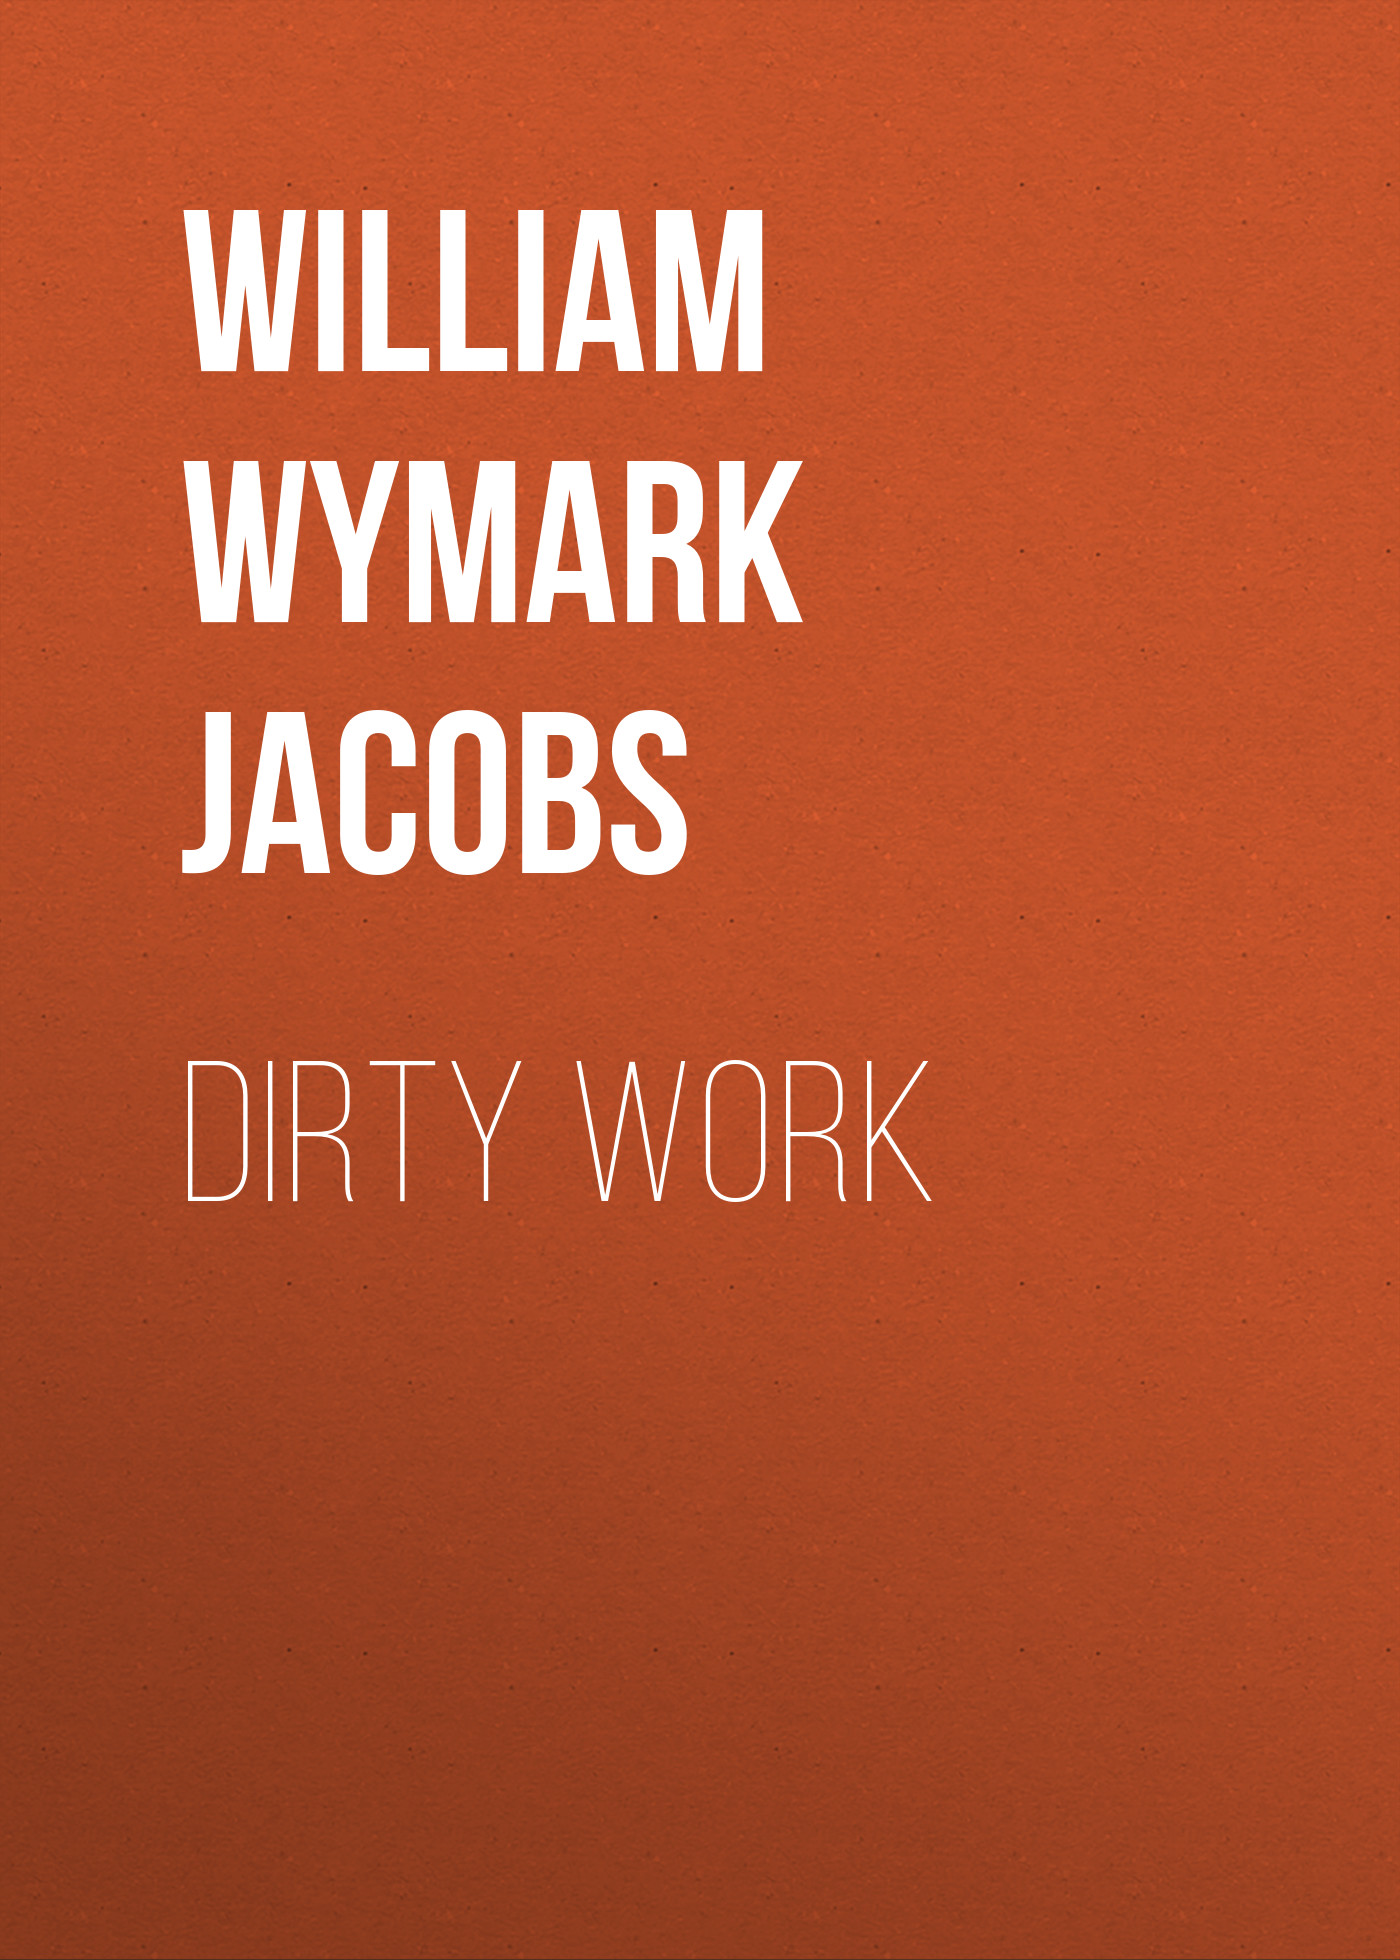 Книга Dirty Work из серии , созданная William Wymark Jacobs, может относится к жанру Зарубежный юмор, Зарубежная старинная литература, Зарубежная классика. Стоимость электронной книги Dirty Work с идентификатором 34842478 составляет 0 руб.